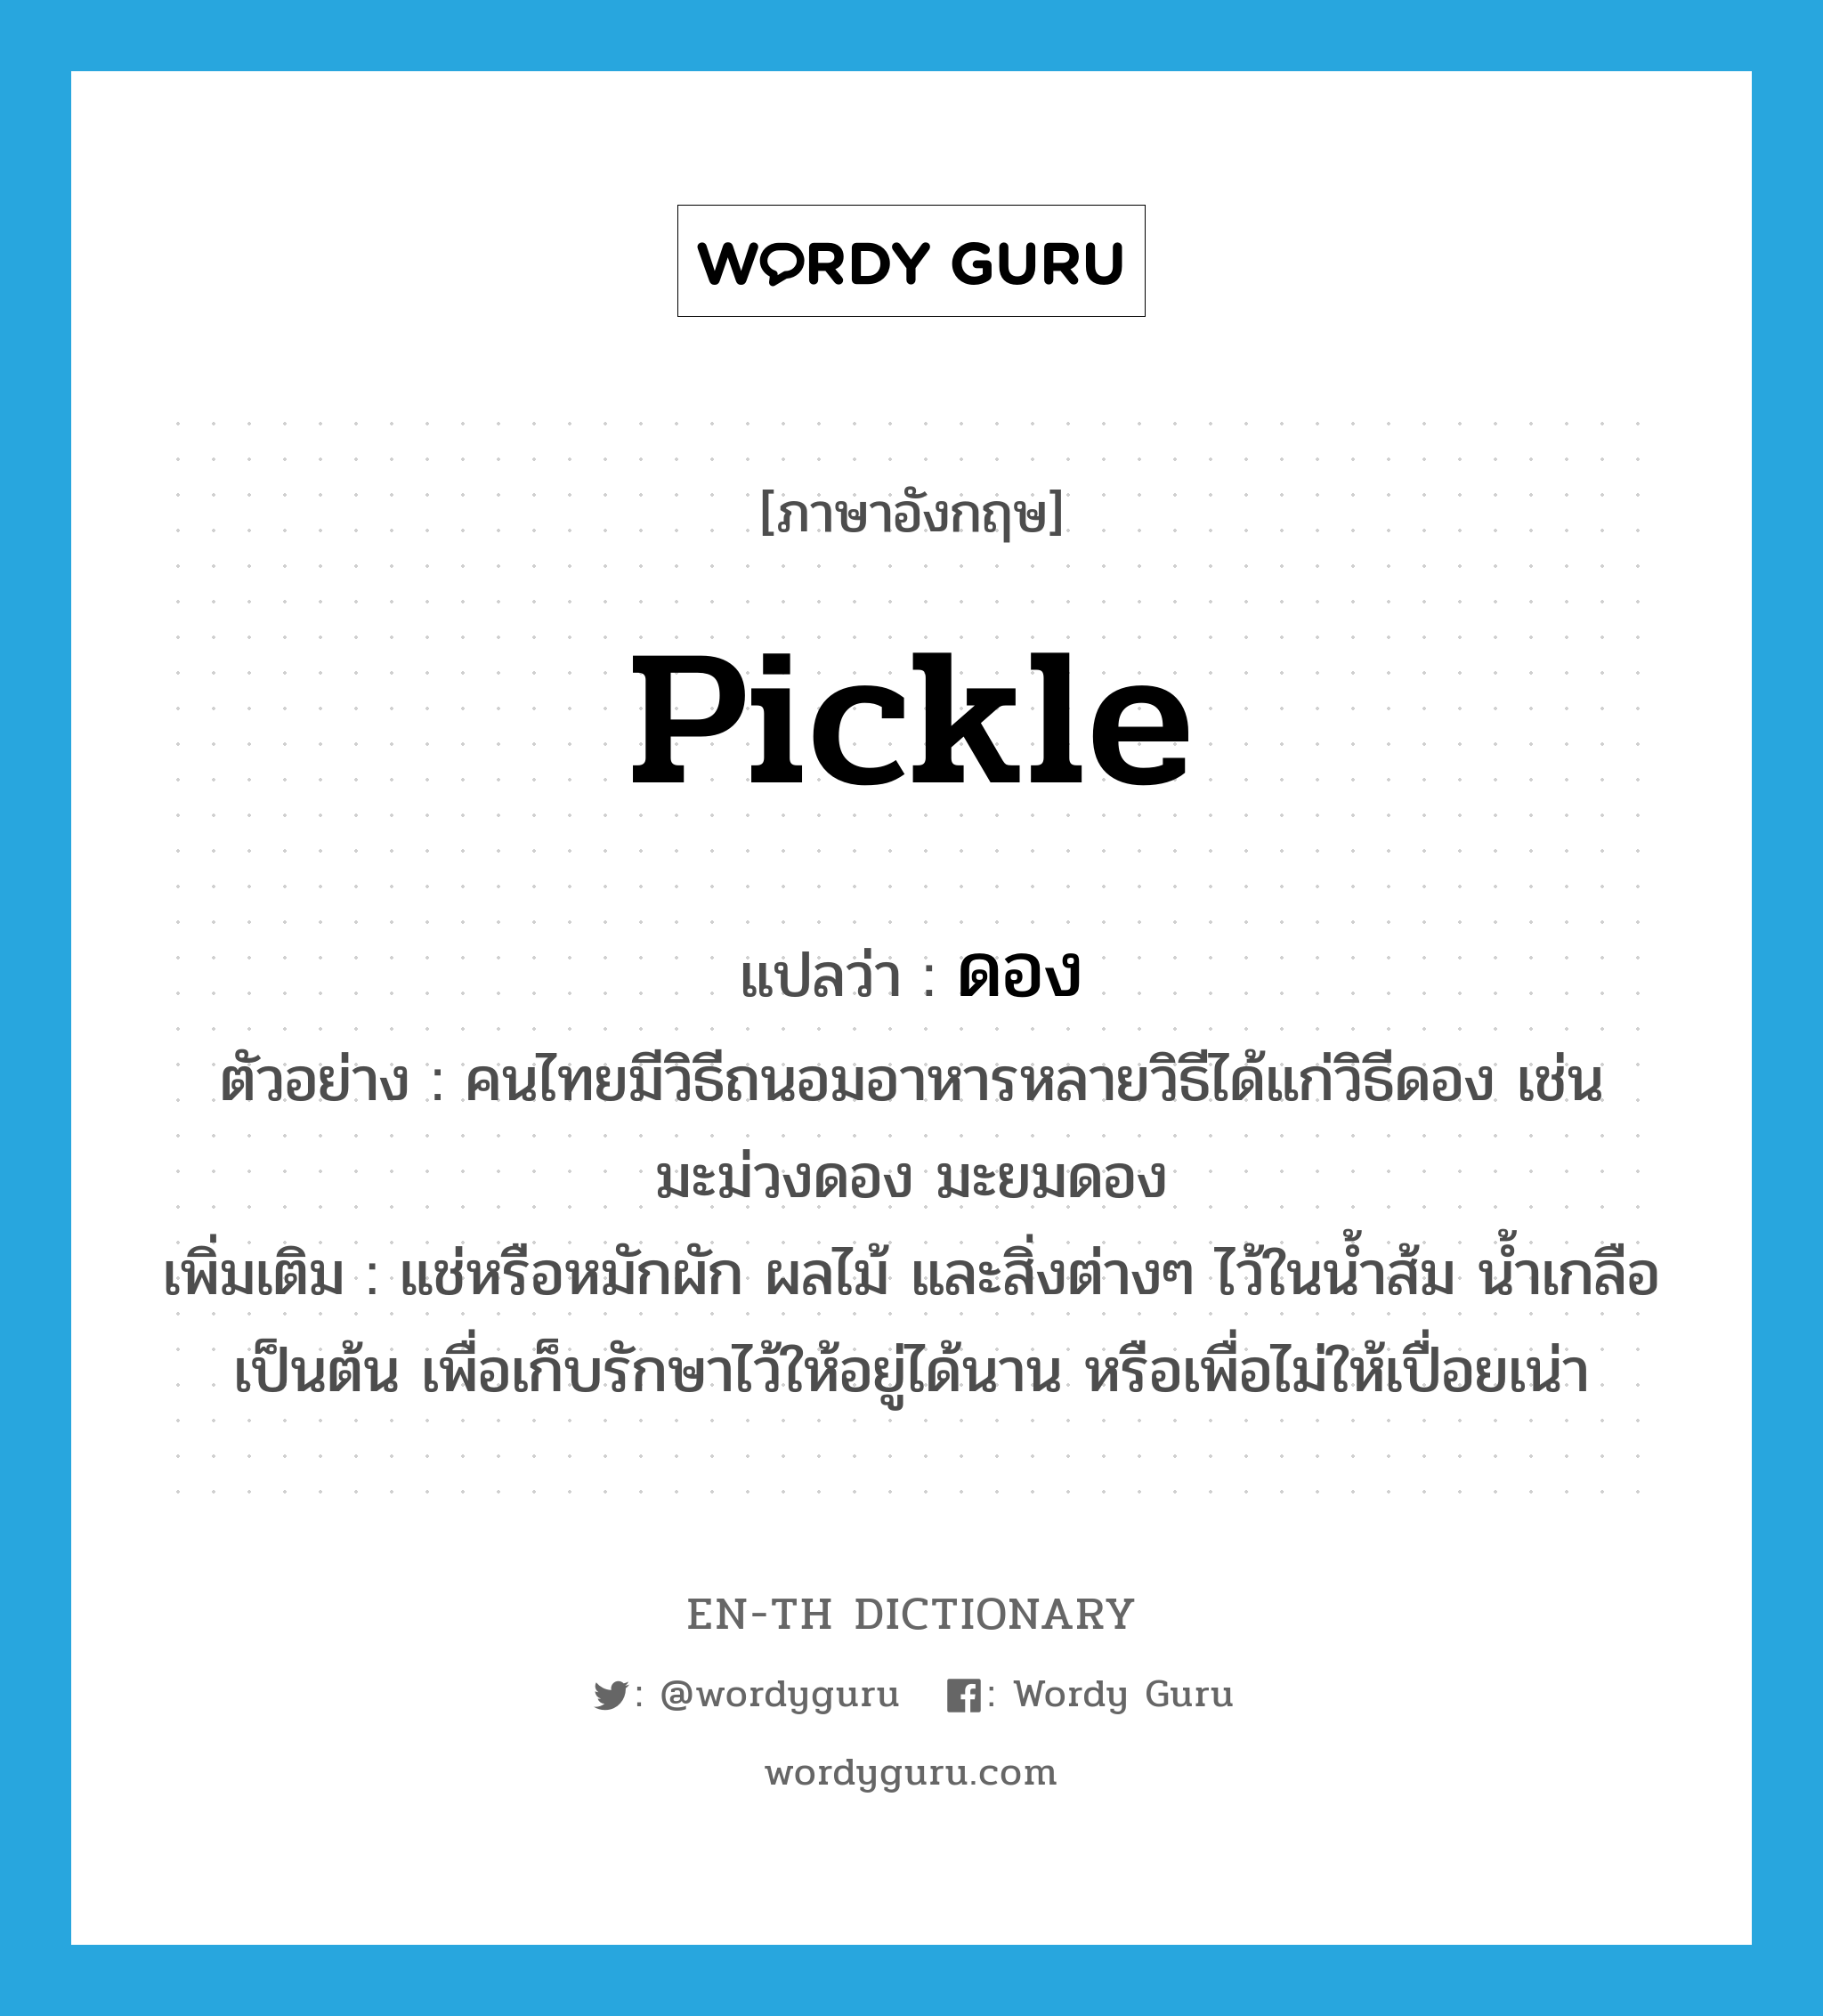 pickle แปลว่า?, คำศัพท์ภาษาอังกฤษ pickle แปลว่า ดอง ประเภท V ตัวอย่าง คนไทยมีวิธีถนอมอาหารหลายวิธีได้แก่วิธีดอง เช่น มะม่วงดอง มะยมดอง เพิ่มเติม แช่หรือหมักผัก ผลไม้ และสิ่งต่างๆ ไว้ในน้ำส้ม น้ำเกลือ เป็นต้น เพื่อเก็บรักษาไว้ให้อยู่ได้นาน หรือเพื่อไม่ให้เปื่อยเน่า หมวด V